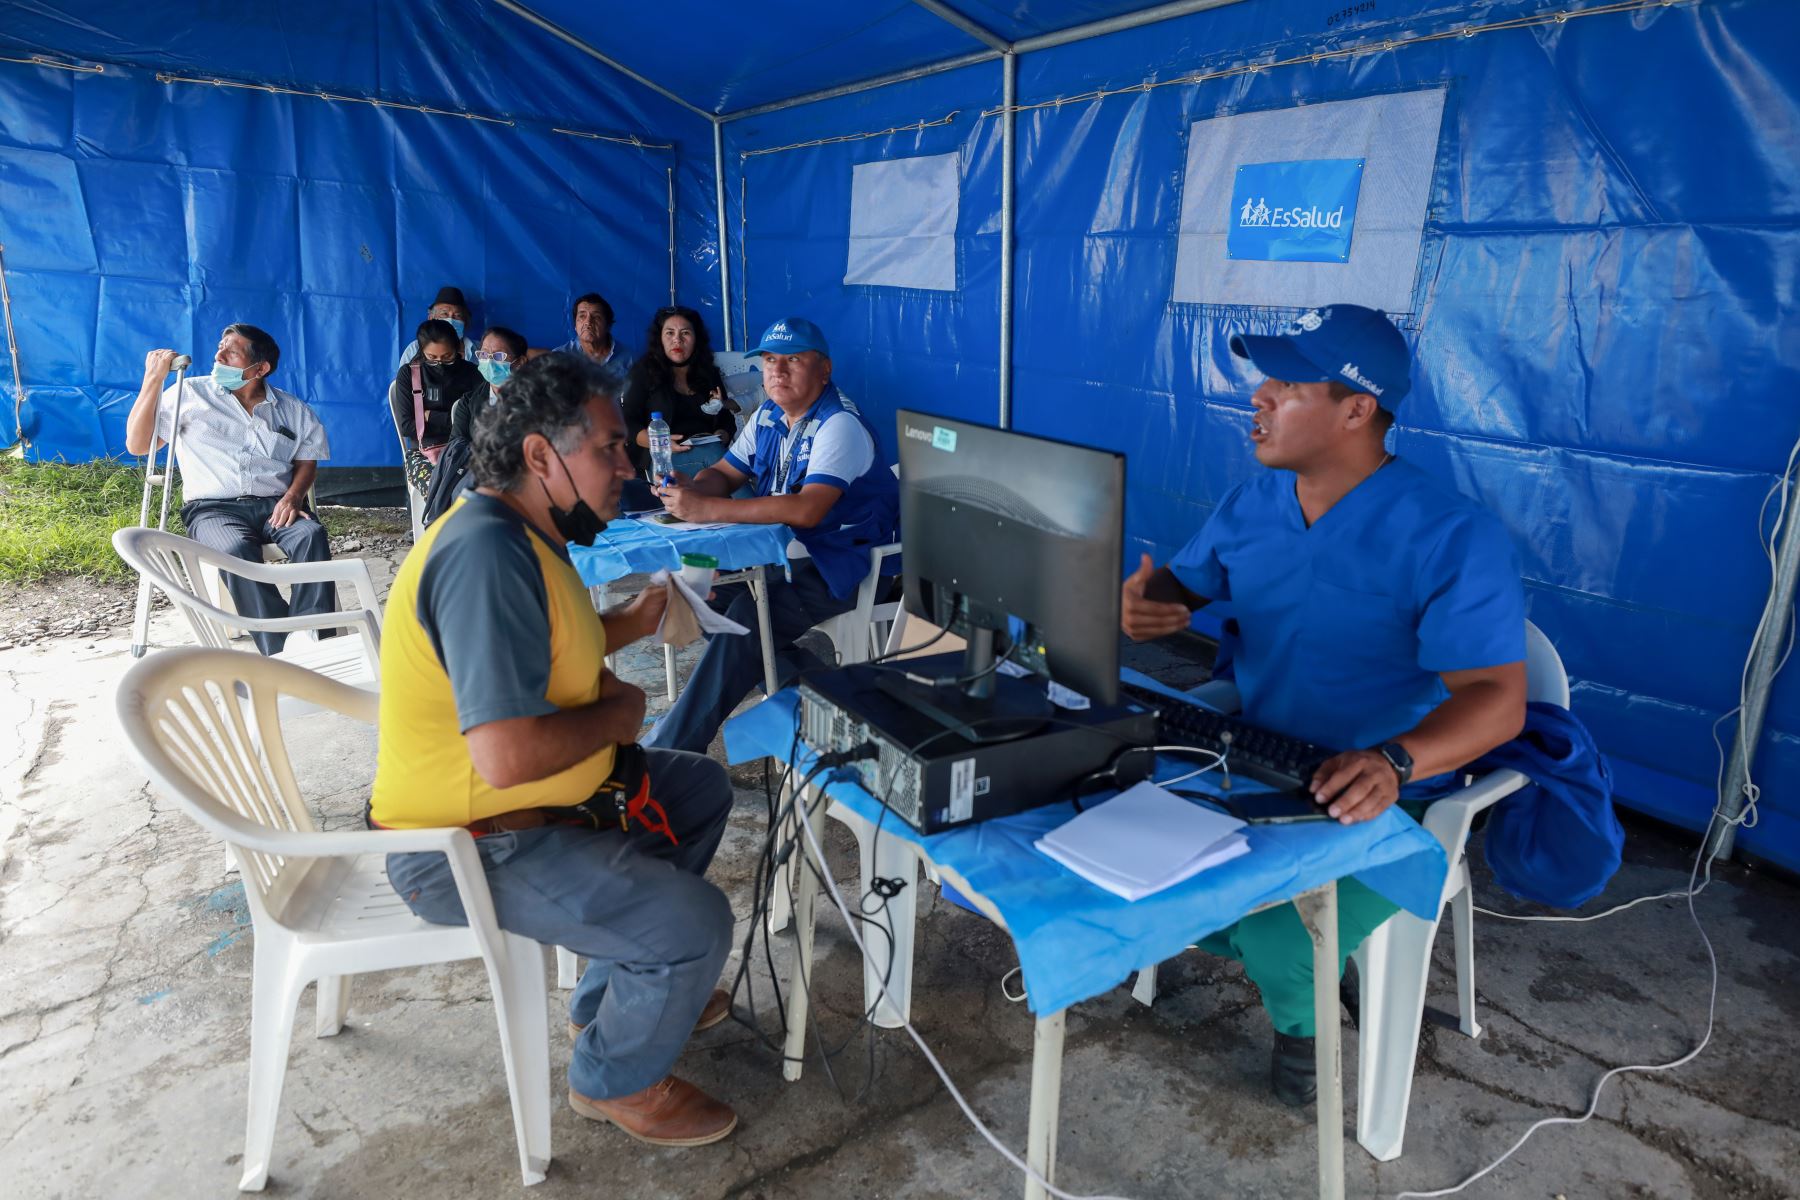 EsSalud Tingo María, Más de 200 pacientes vencieron el dengue con rápida detección y tratamiento oportuno.
Foto: ANDINA/EsSalud